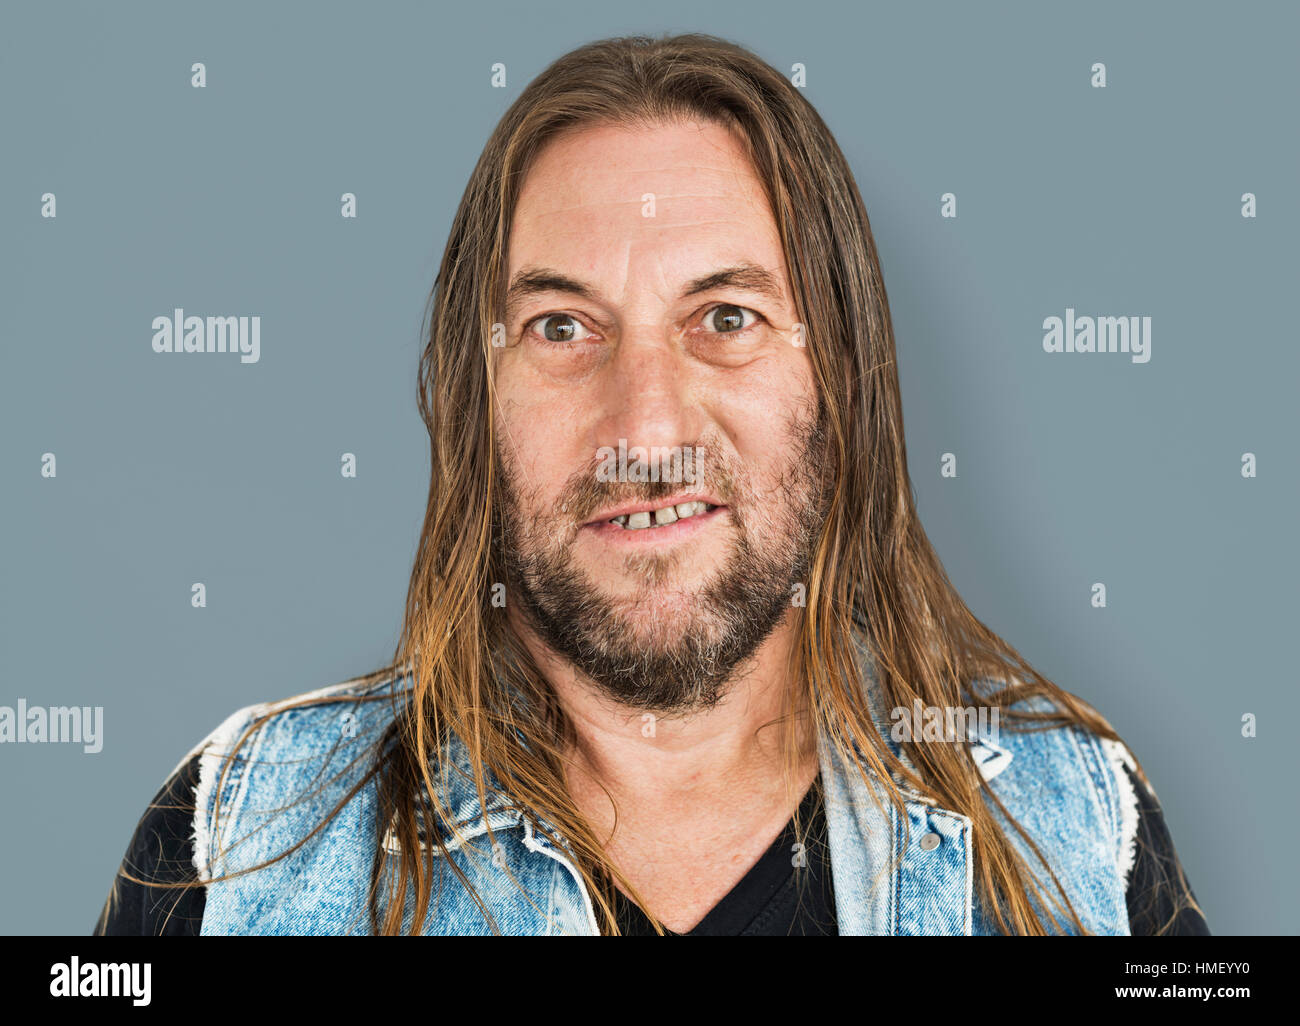 Mann lange Haare Frisur lächelnd Hohn Porträt Konzept Stockfoto